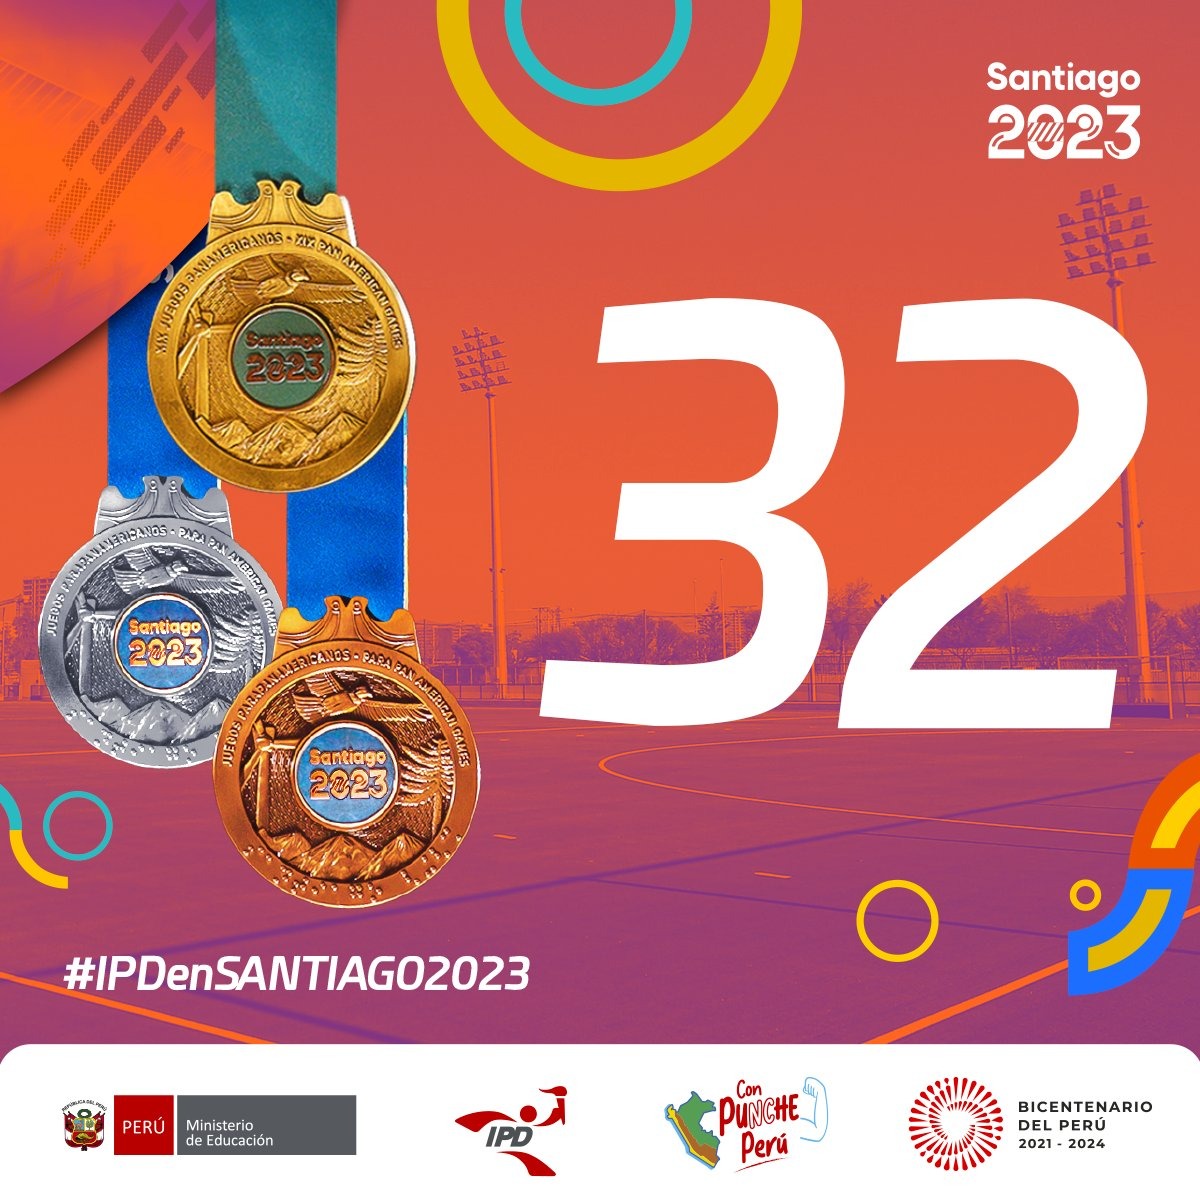 Perú ganó 32 medallas en Santiago 2023. | Fuente: IPD